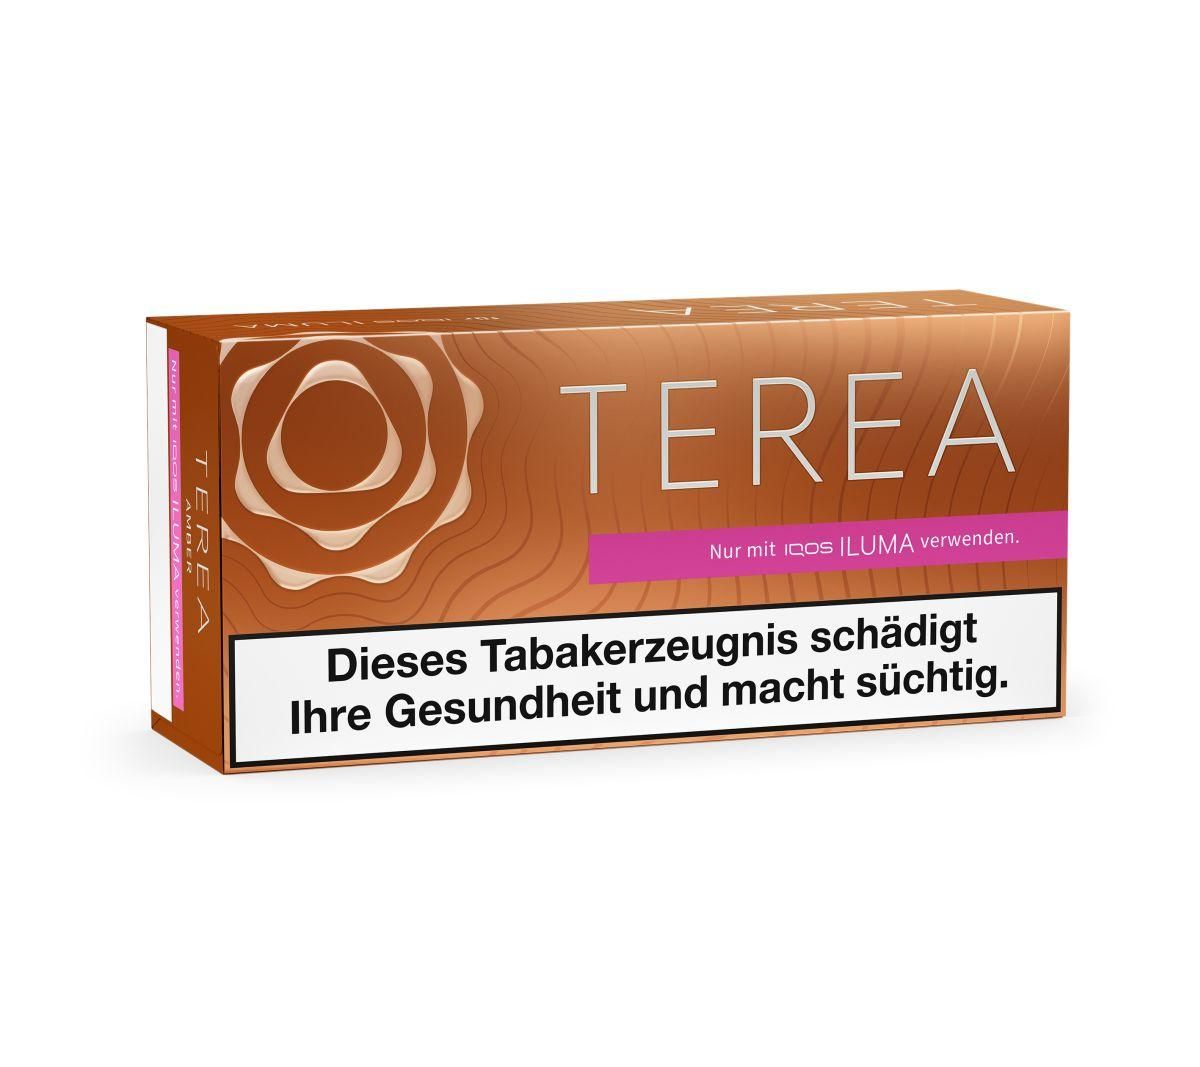 IQOS Terea - Bronze Tabaksticks für IQOS ILUMA / ILUMA ONE (20